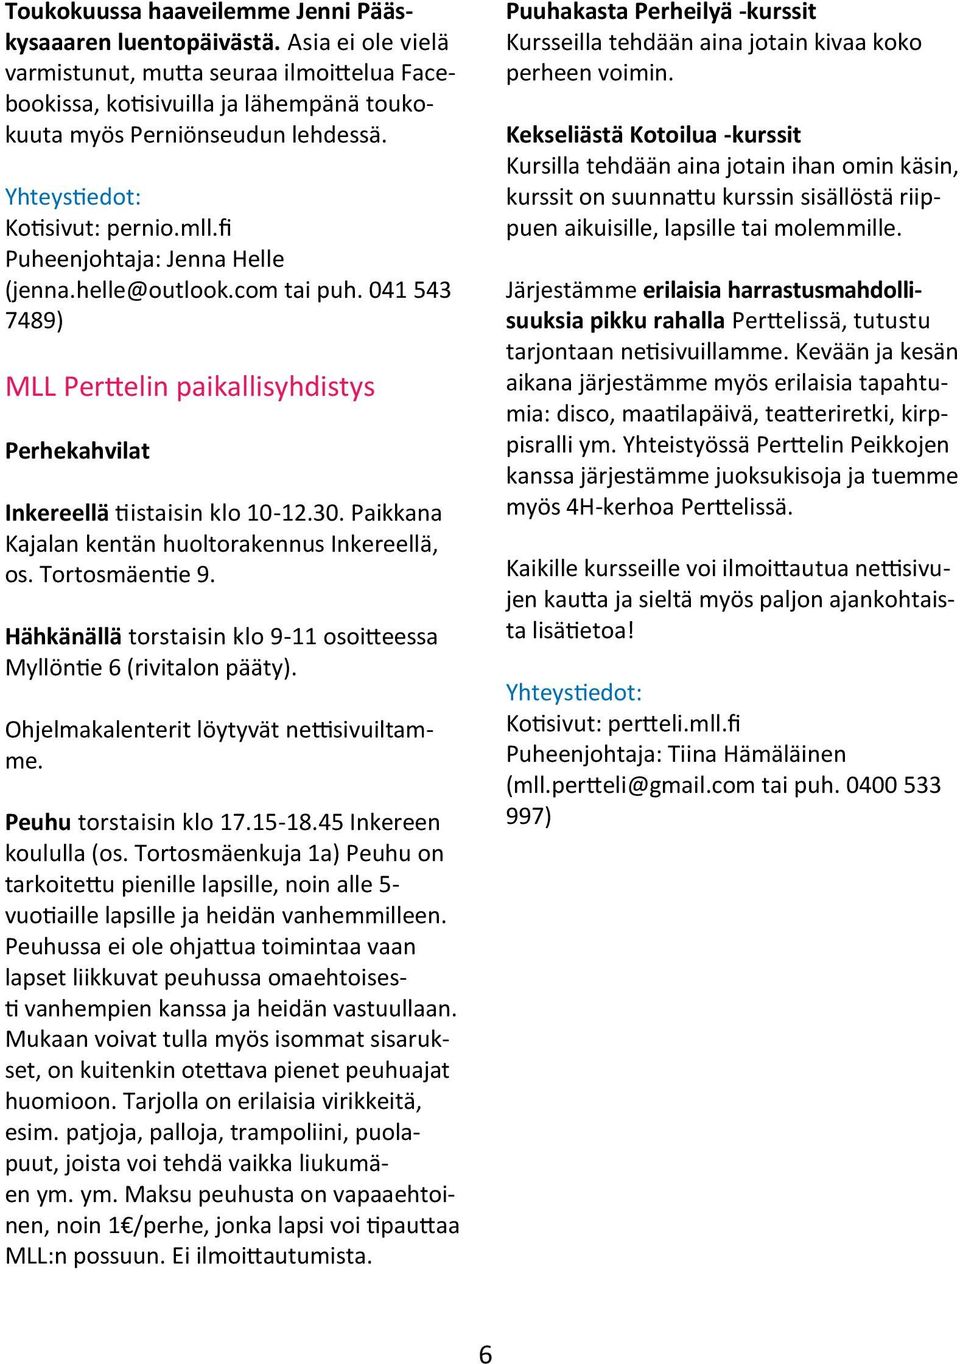 Paikkana Kajalan kentän huoltorakennus Inkereellä, os. Tortosmäentie 9. Hähkänällä torstaisin klo 9-11 osoitteessa Myllöntie 6 (rivitalon pääty). Ohjelmakalenterit löytyvät nettisivuiltamme.